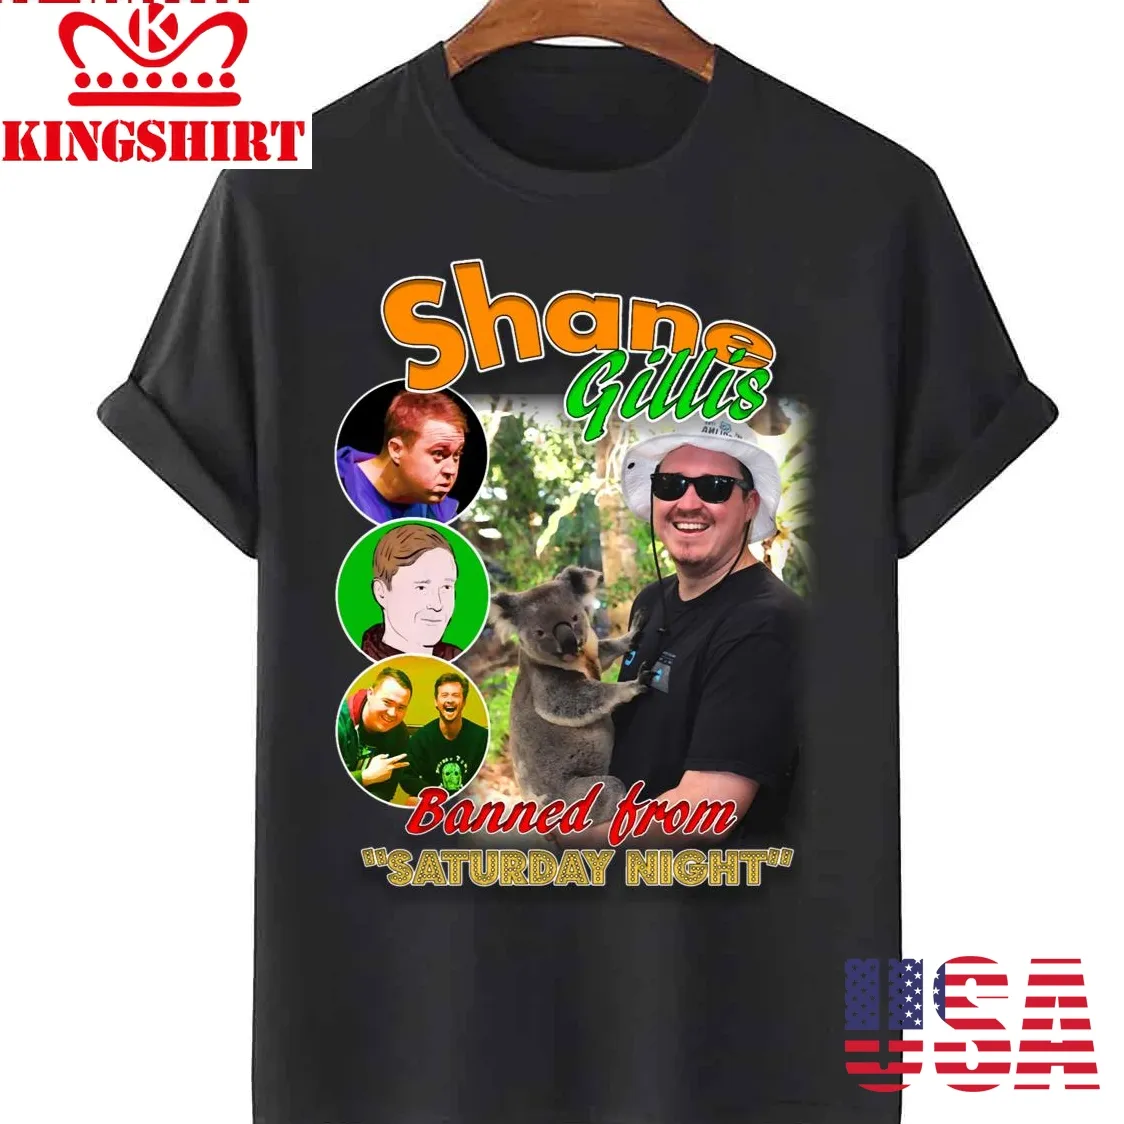 Shane Gillis Vintage Rap Style Design Unisex T Shirt